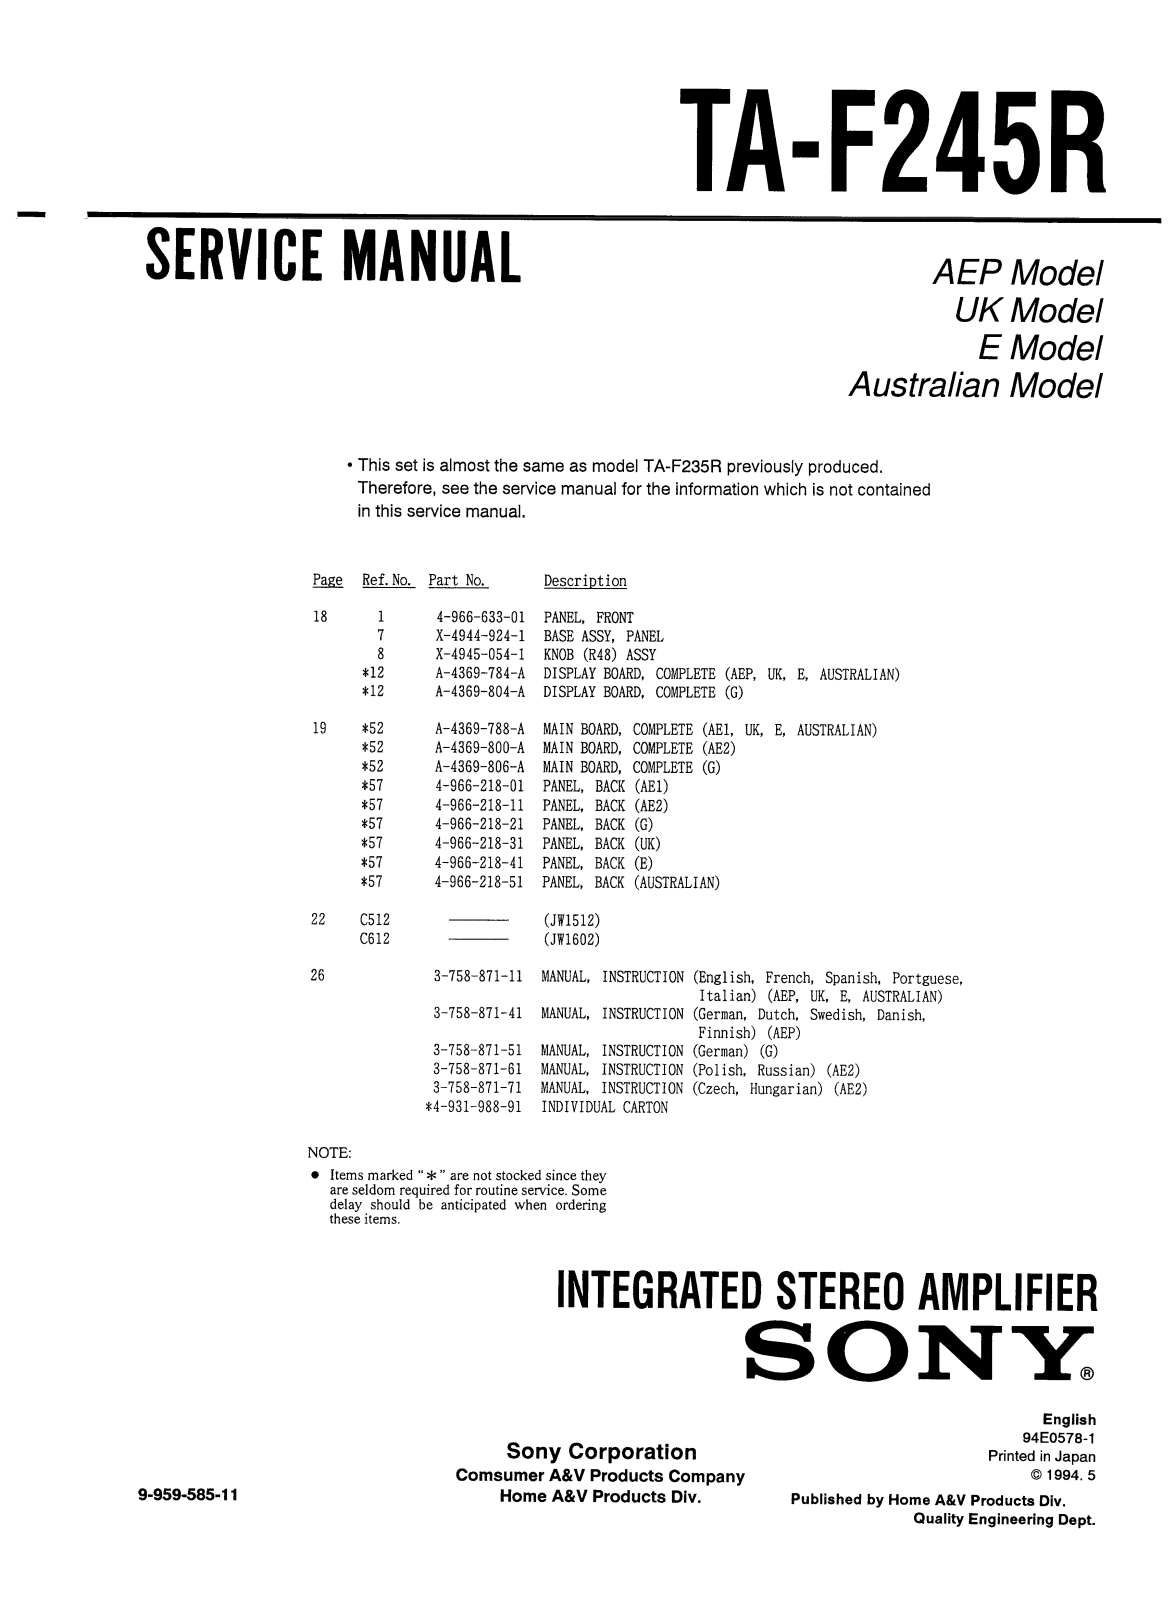 Sony TA-F245R Service Manual